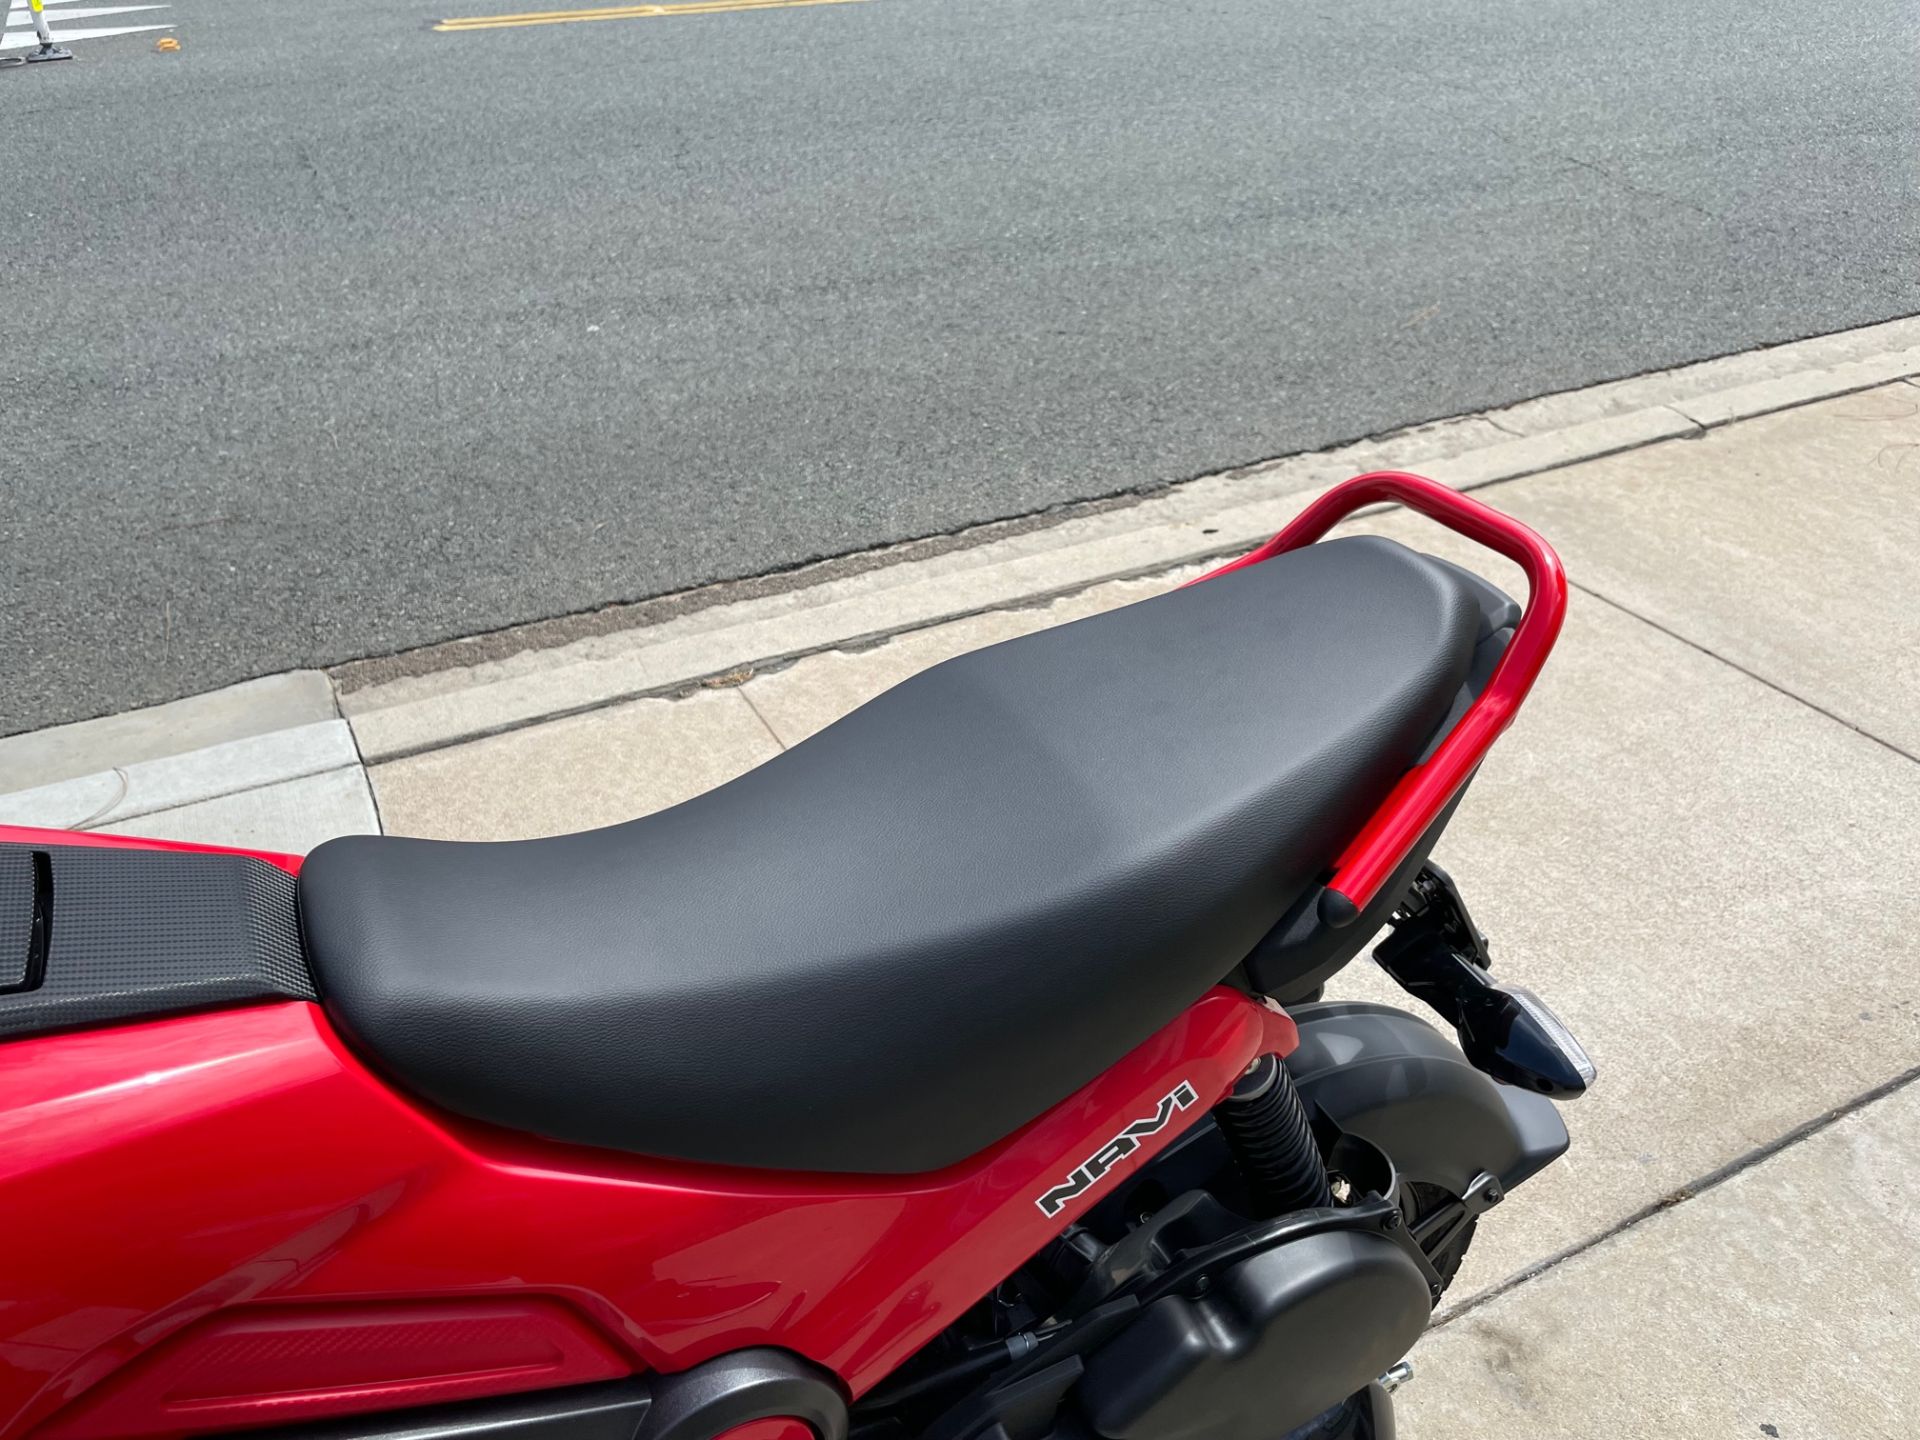 New 2022 Honda Navi | Motorcycles in EL Cajon CA | N/A Red